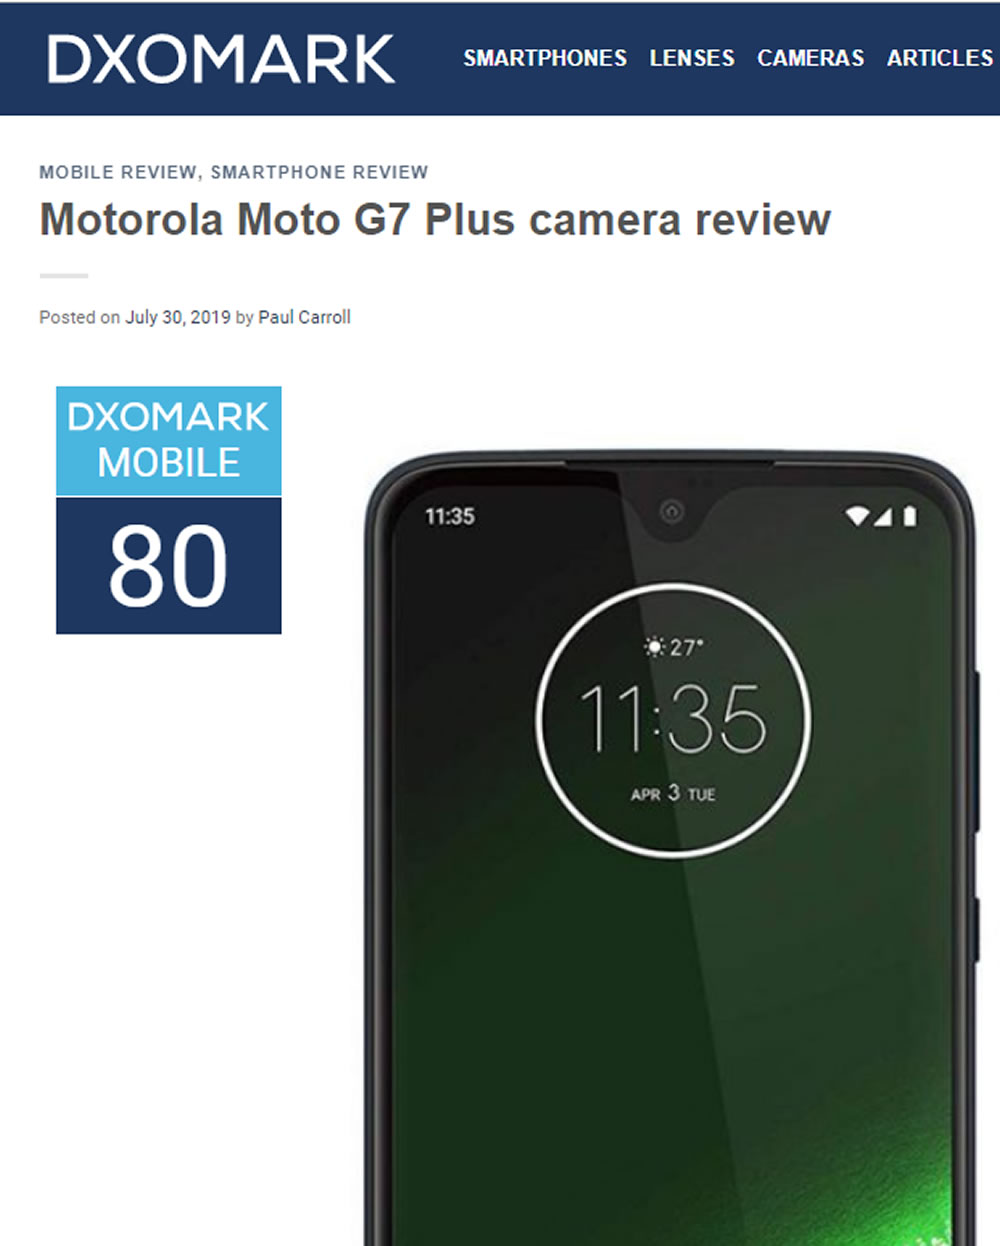 DxOMark raja a las cámaras de Motorola G7 Plus